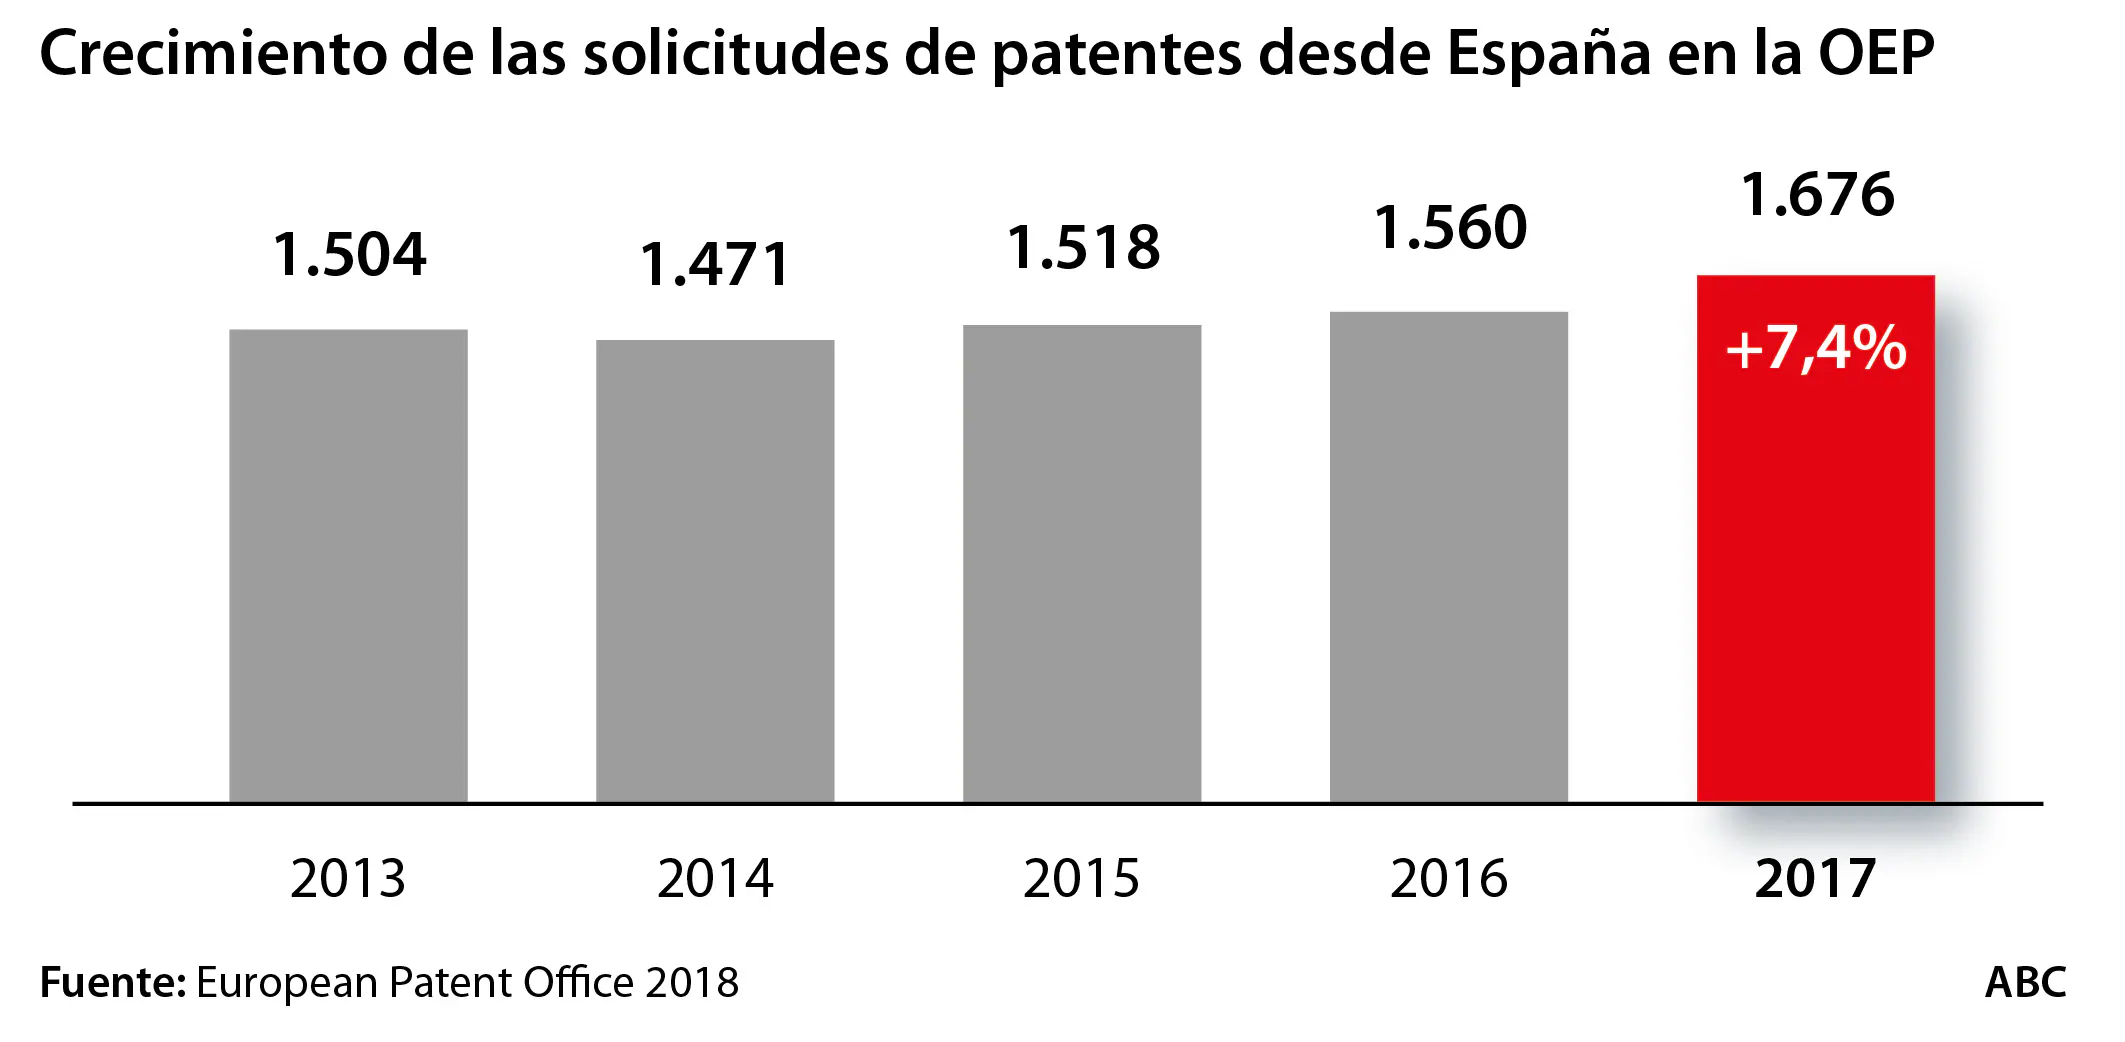 Crecimiento de las solicitudes de patentes desde España